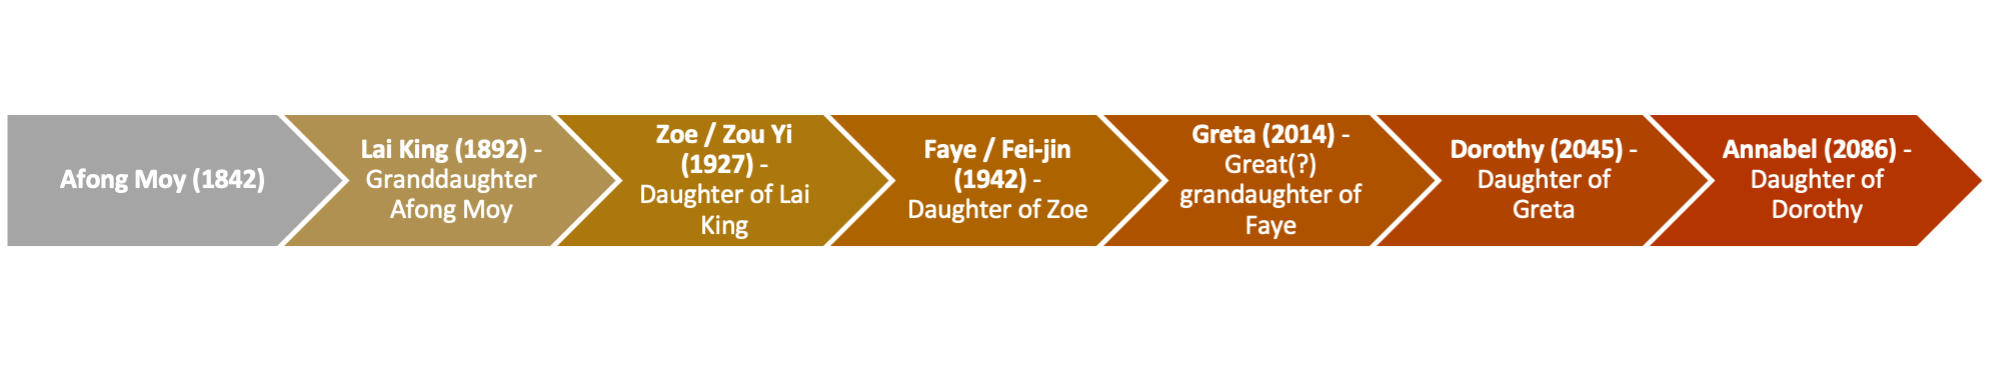 Afong Moy (1842): Lai King (1892) - Granddaughter Afong Moy, Zoe / Zou Yi (1927) - Daughter of Lai King, Faye / Fei-jin (1942) - Daughter of Zoe, Greta (2014) - Great(?) grandaughter of Faye, Dorothy (2045) - Daughter of Greta, Annabel (2086) - Daughter of Dorothy